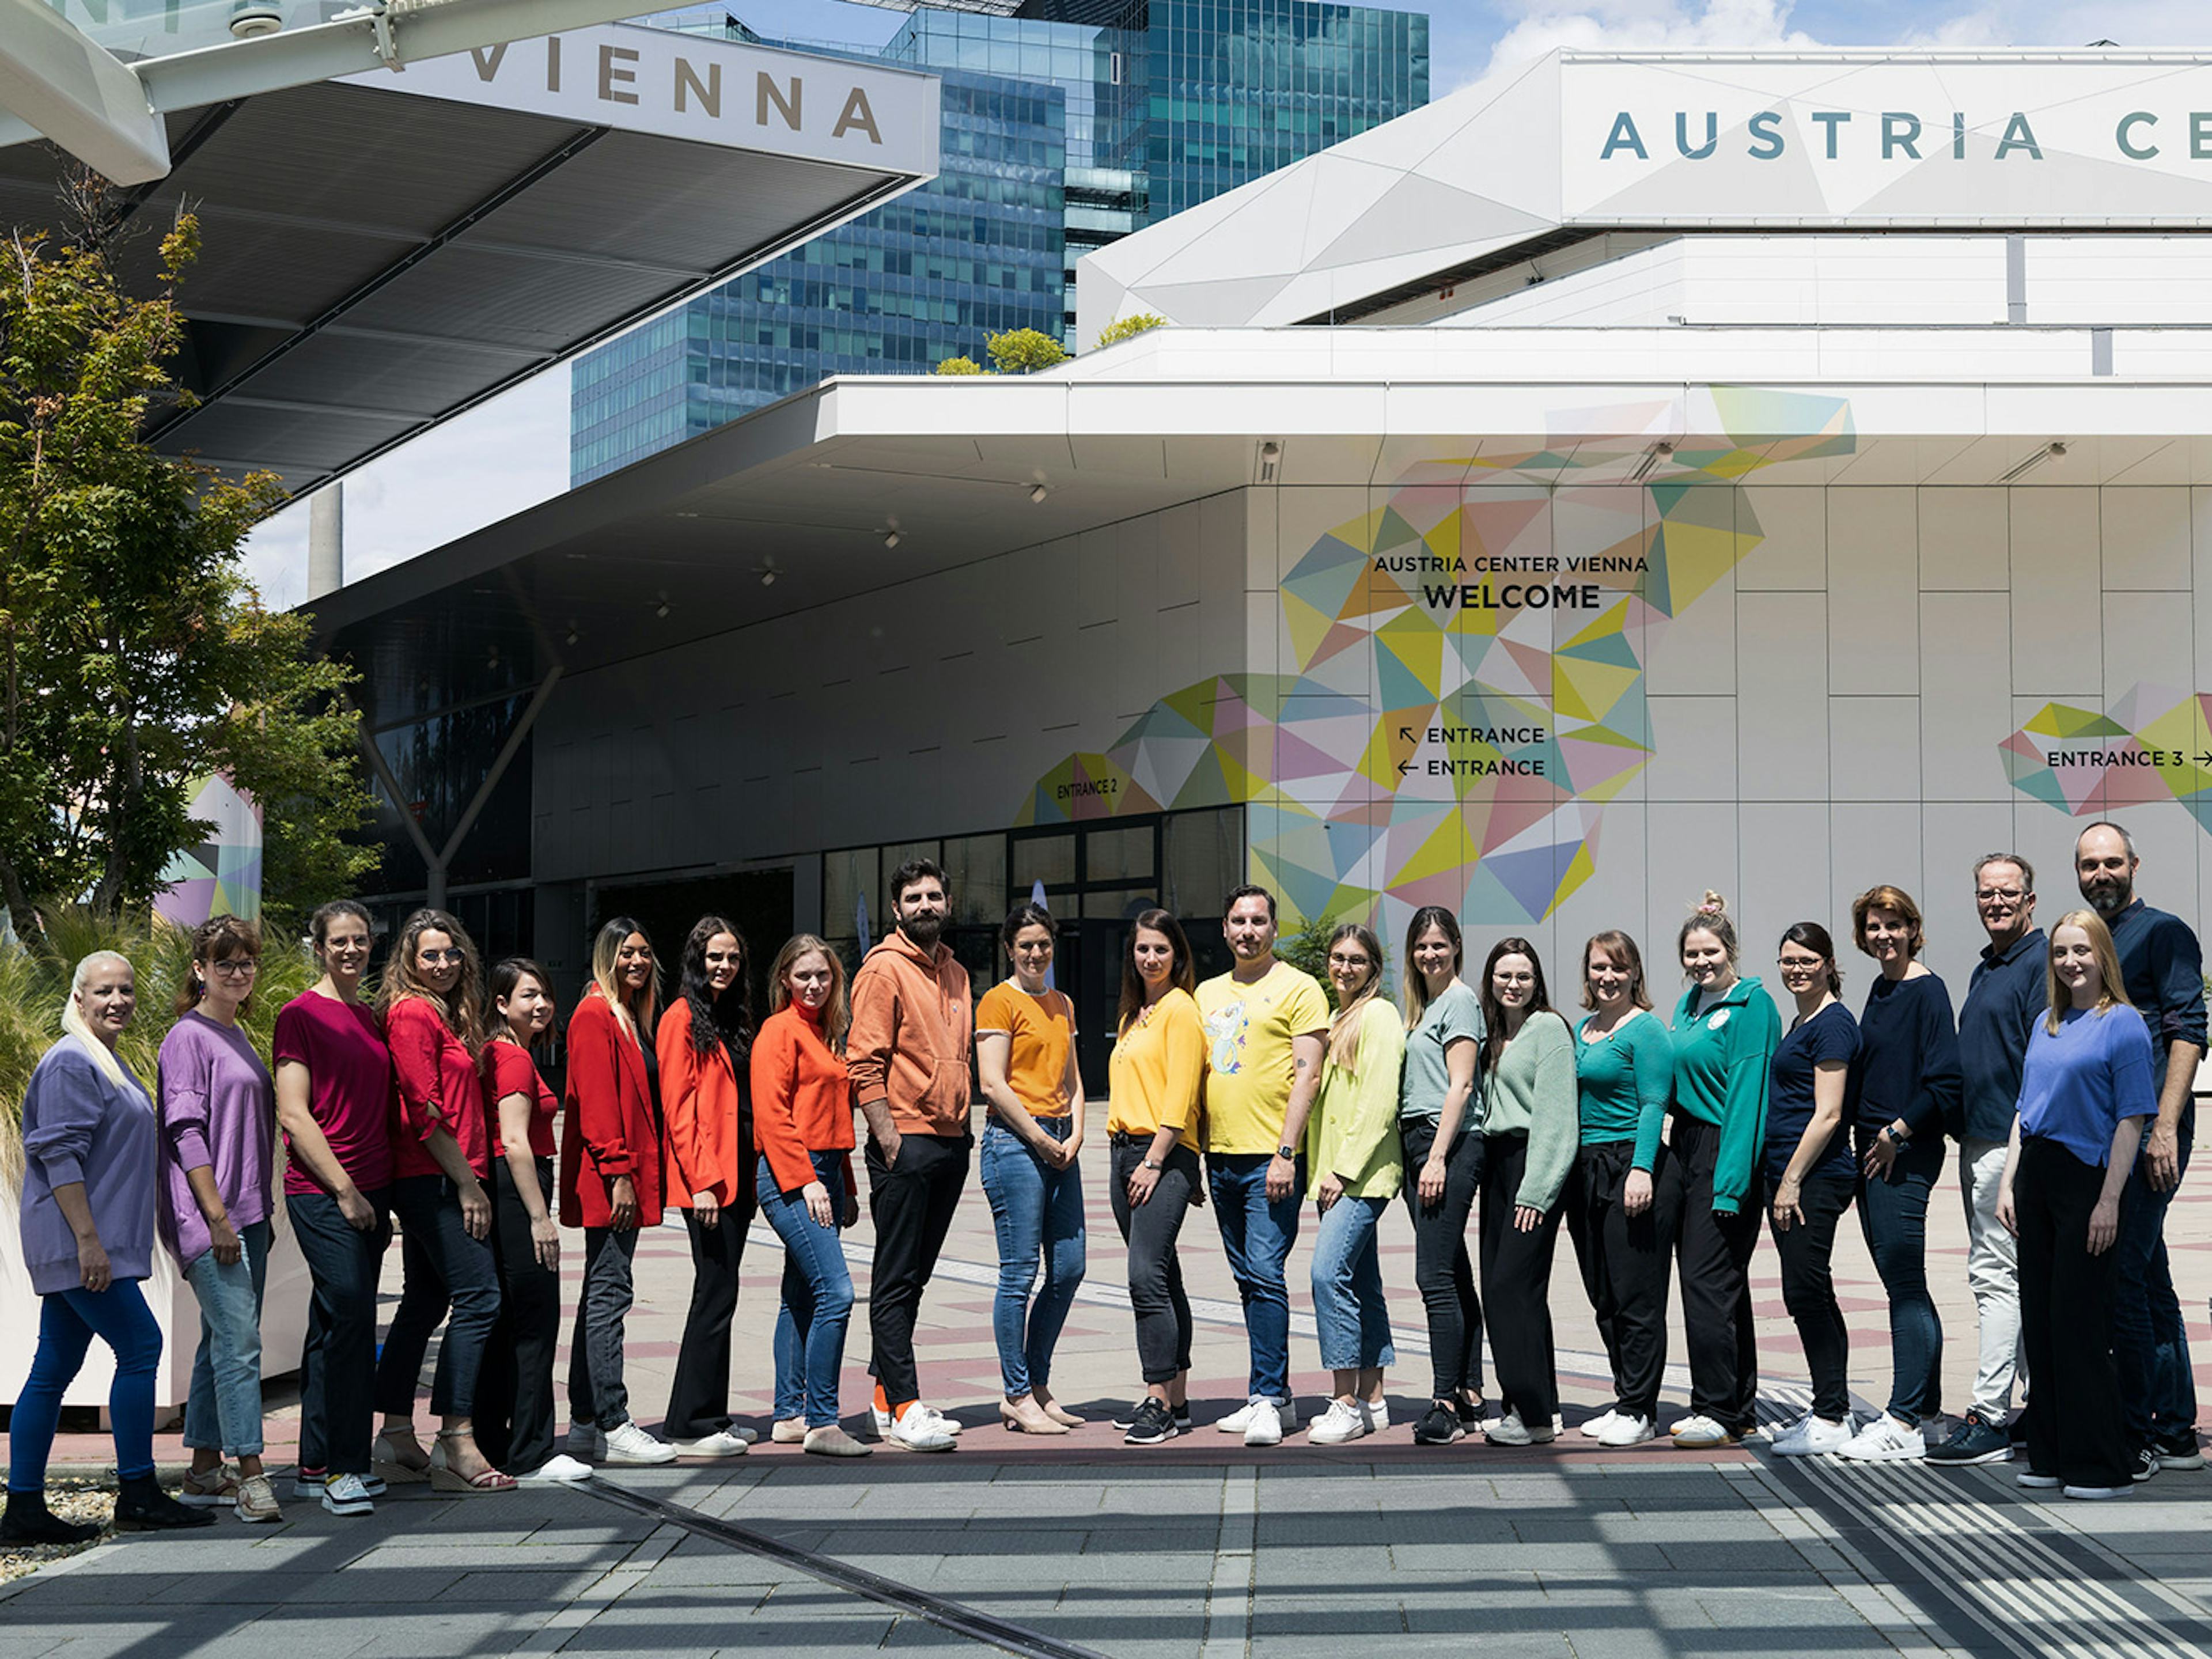 Mitarbeiterinnen des Austria Center Vienna stehen in einer Reihe aufgestellt in den Farben des Regenbogens.